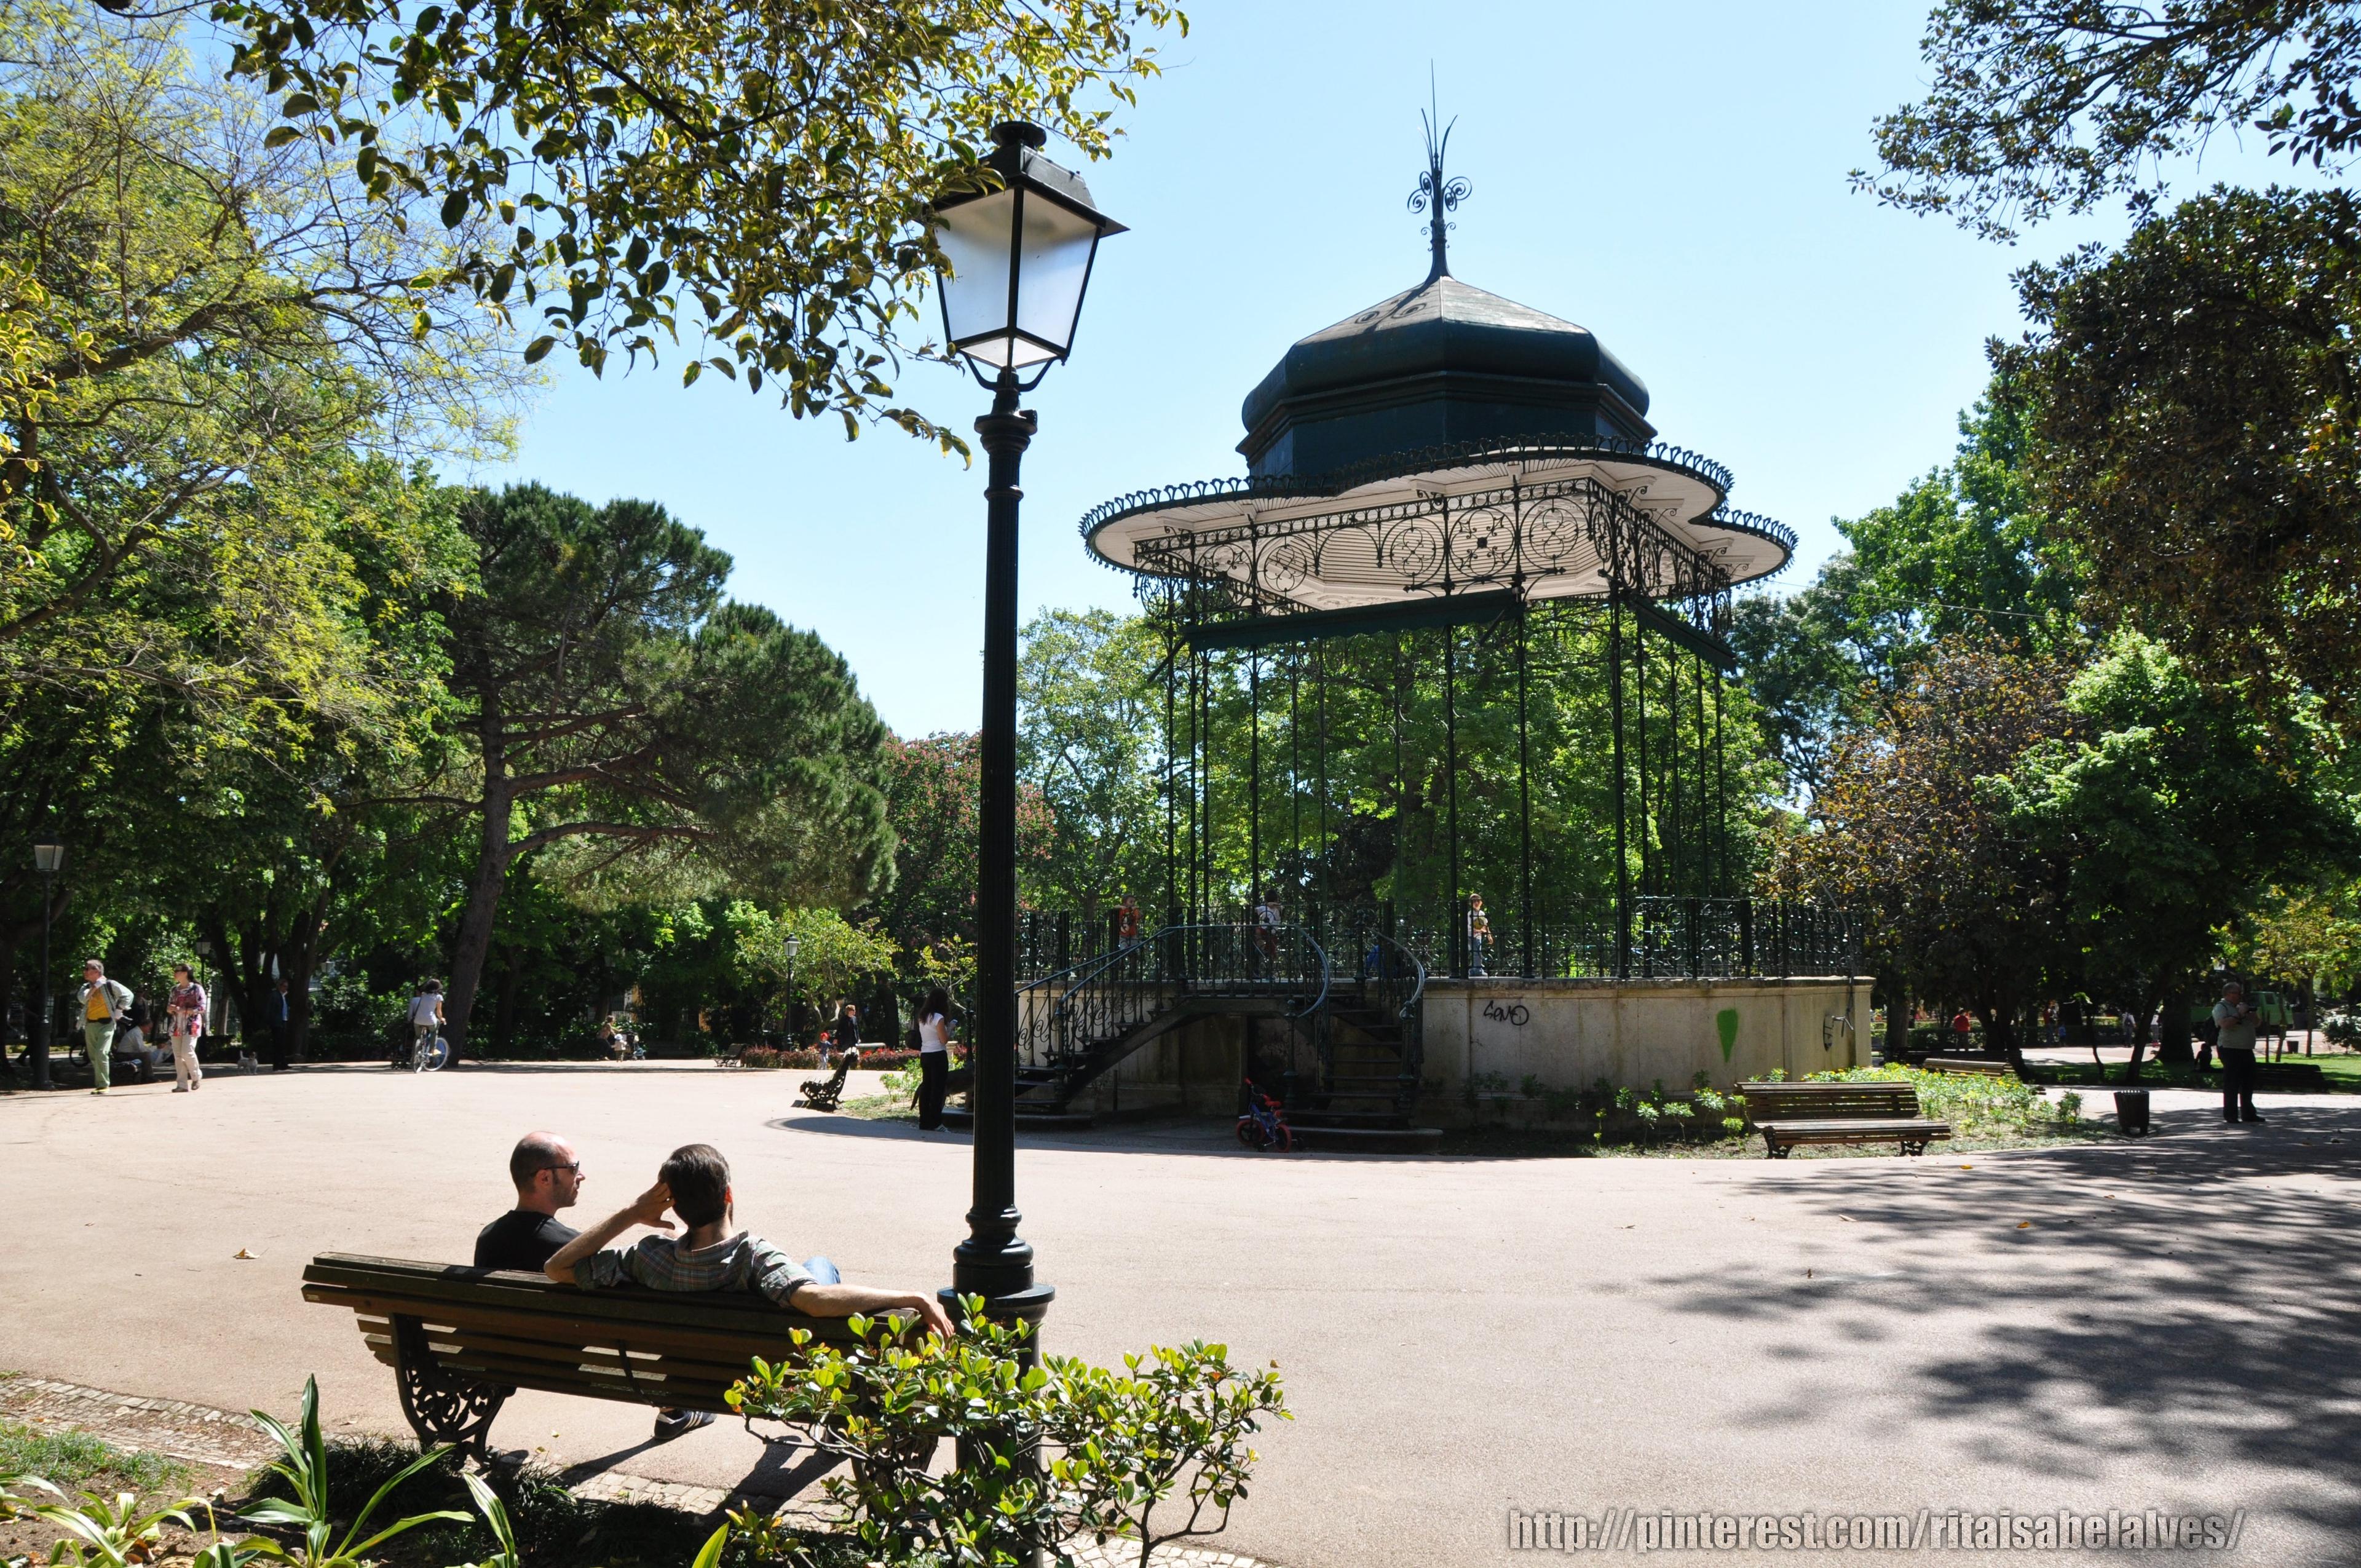 Cover image of this place Jardim da Estrela